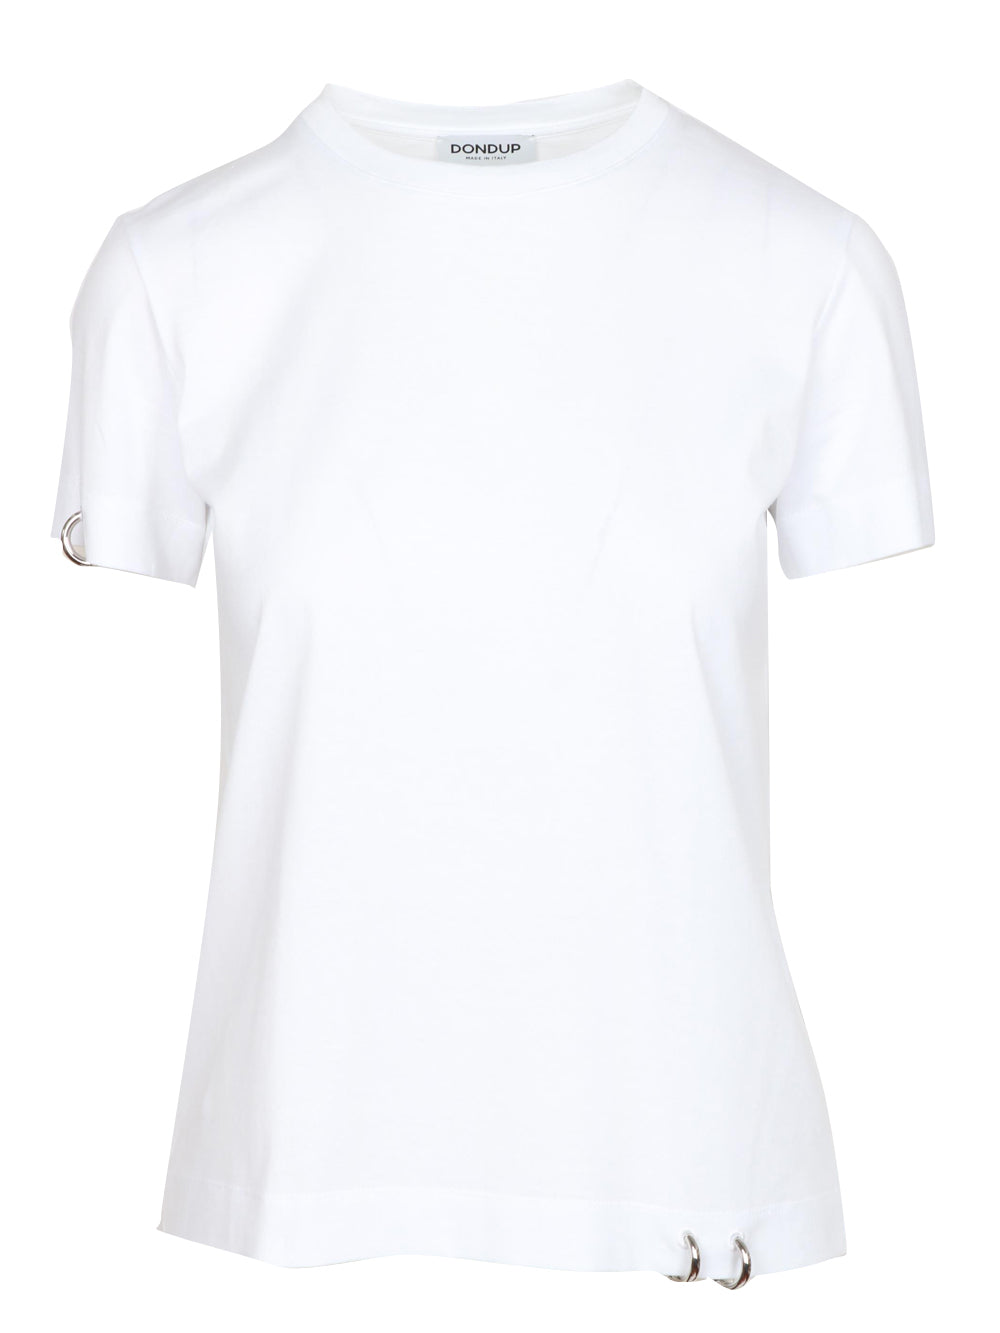 DONDUP T-Shirt Girocollo in Cotone Bianca con Piercing Bianco